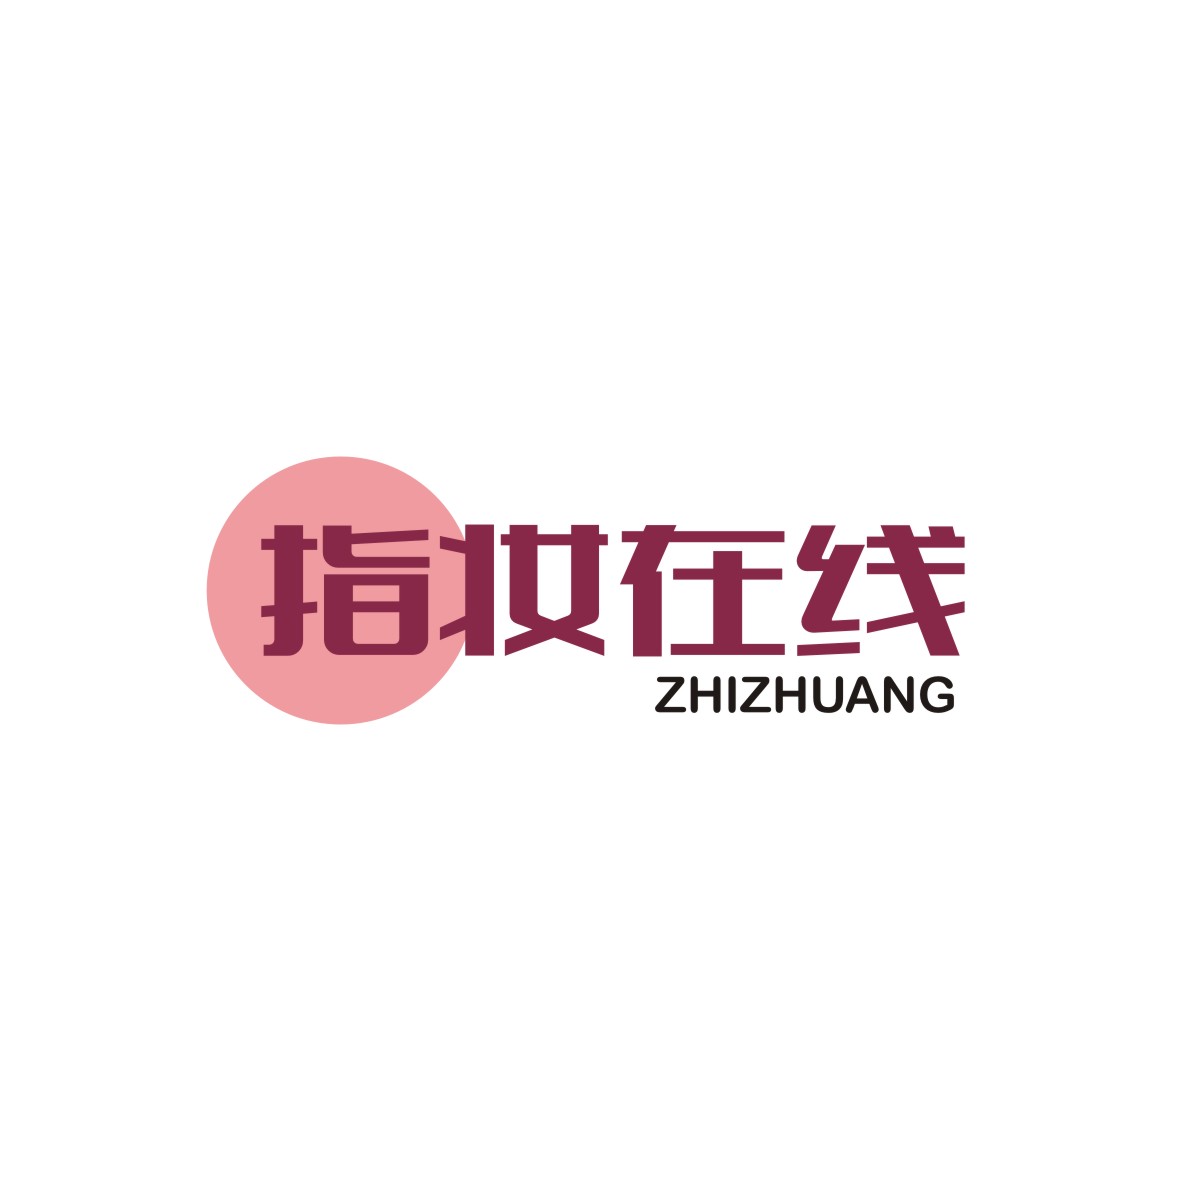 广州知麦网络科技有限公司商标指妆在线 ZHIZHUANG（35类）商标买卖平台报价，上哪个平台最省钱？